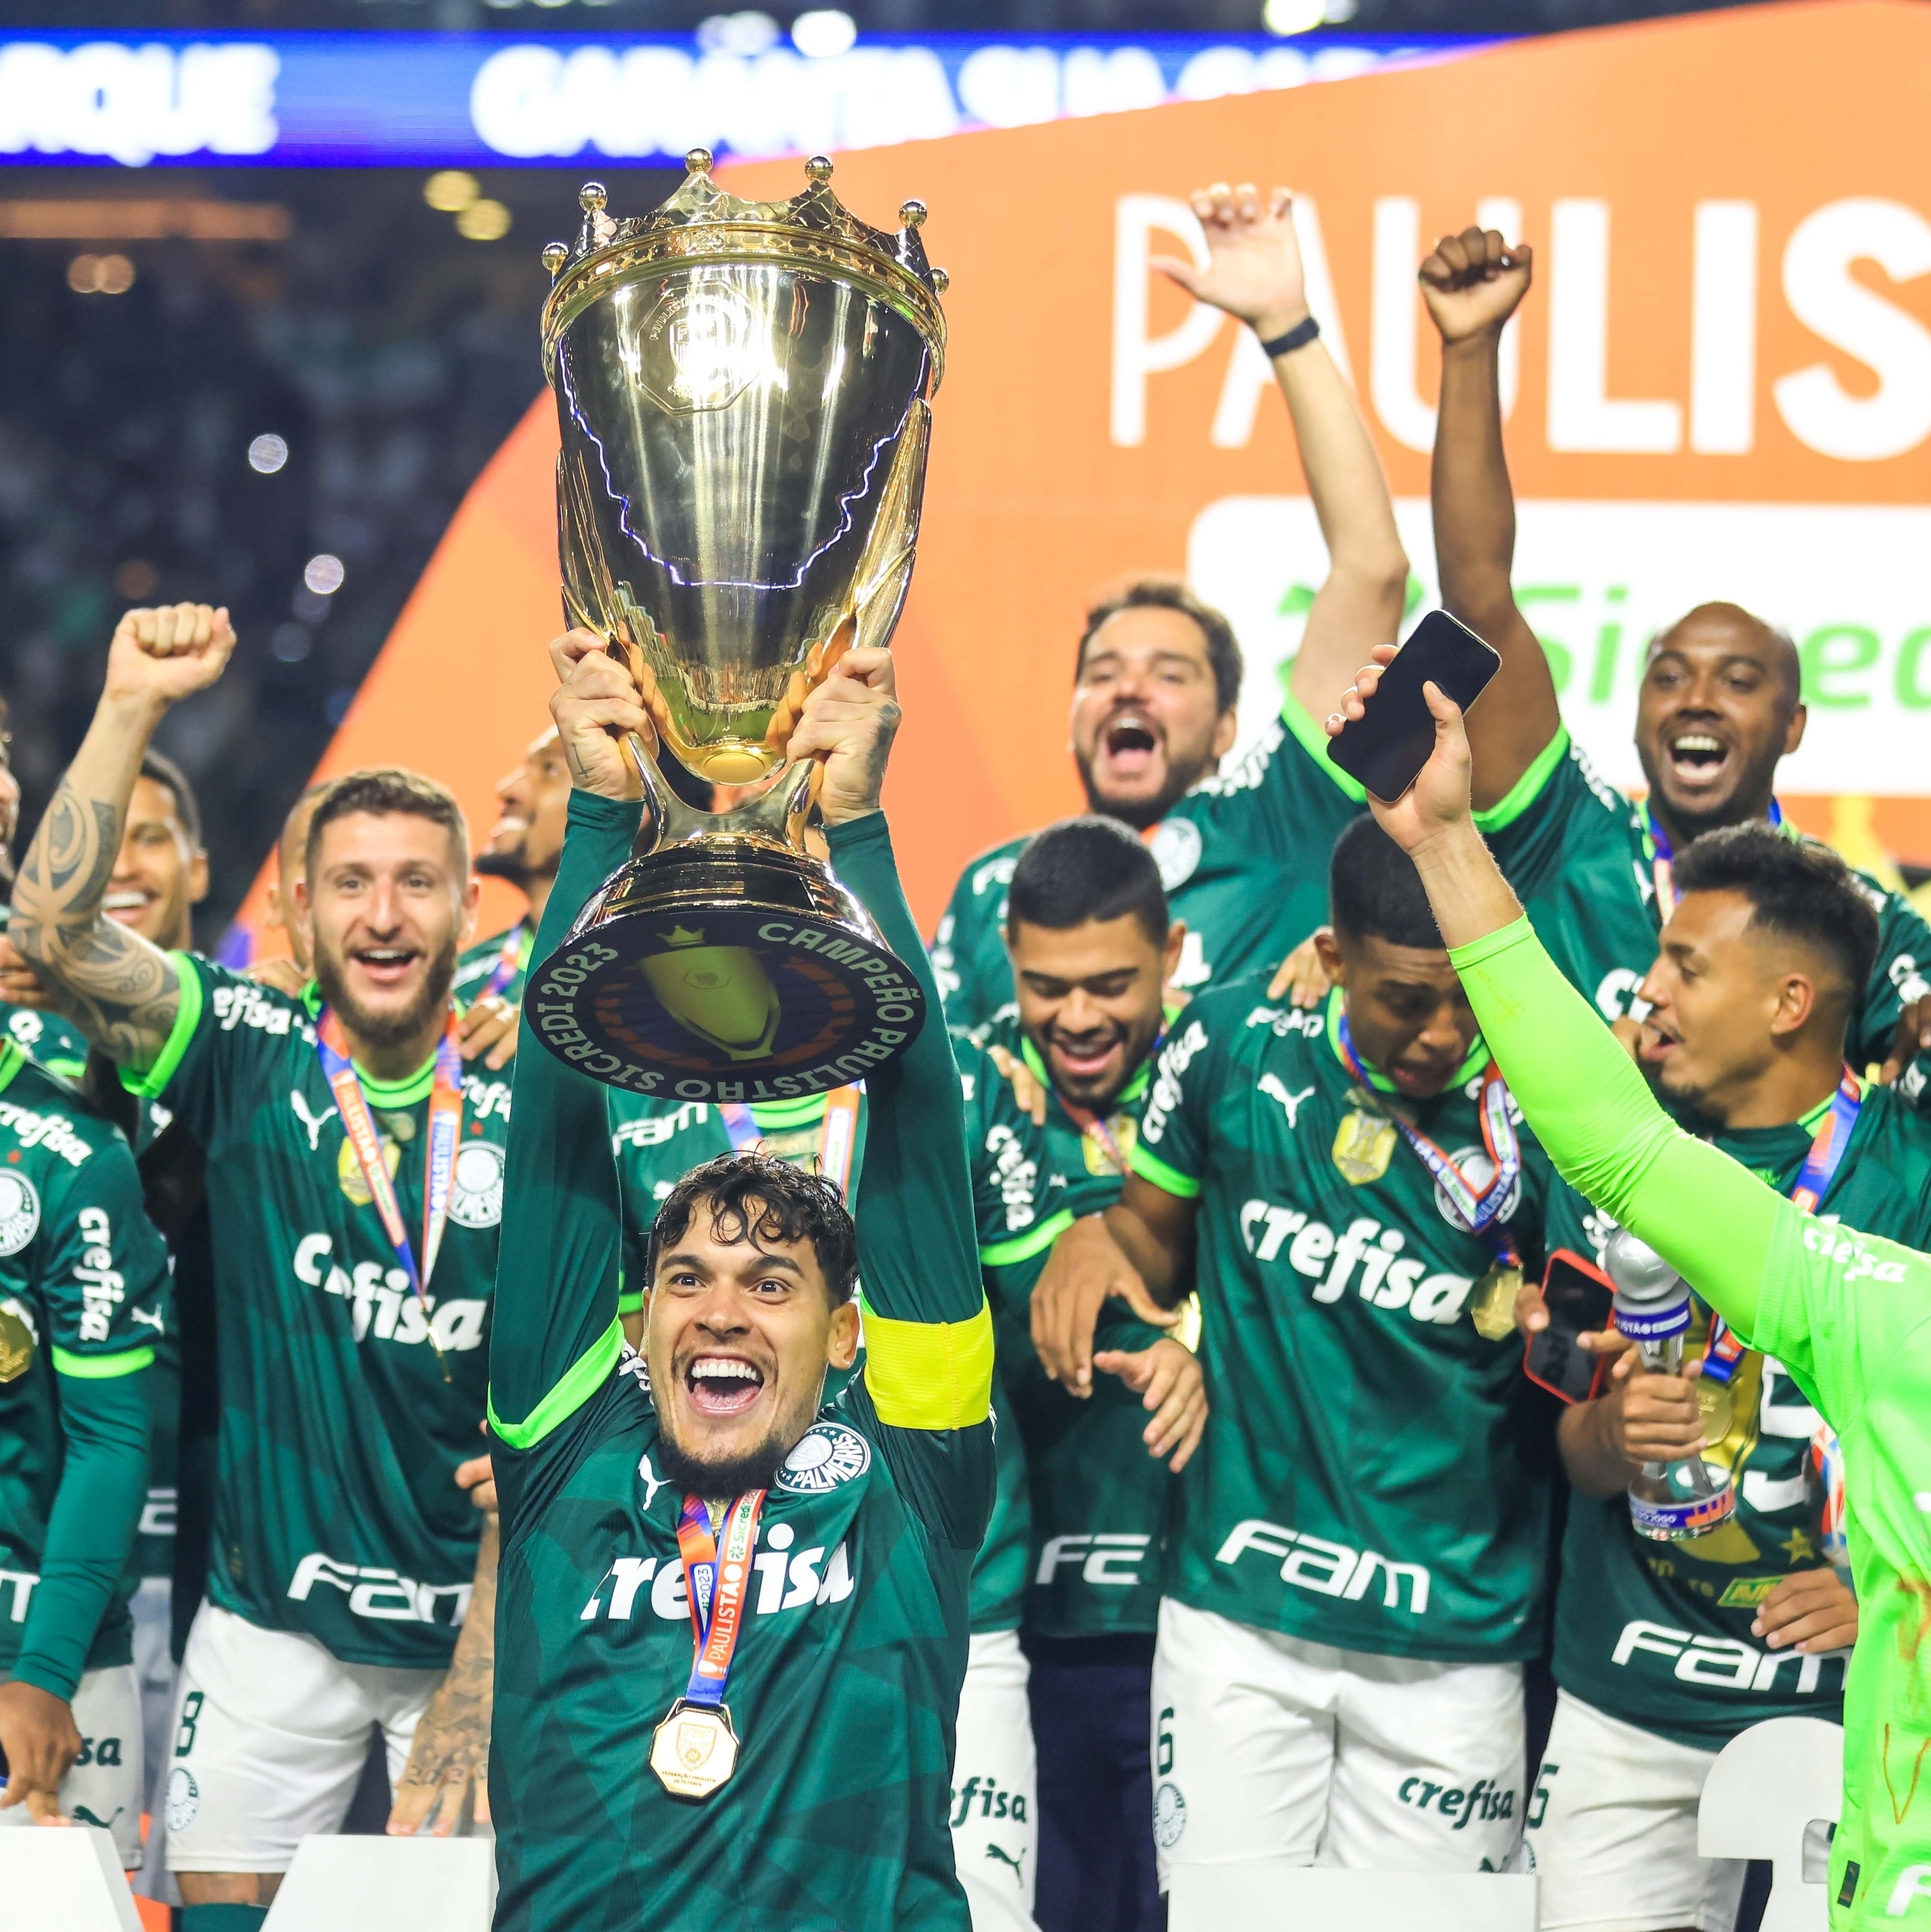 O novo formato da Copa Paulista 2022, by Quem é que sobe?